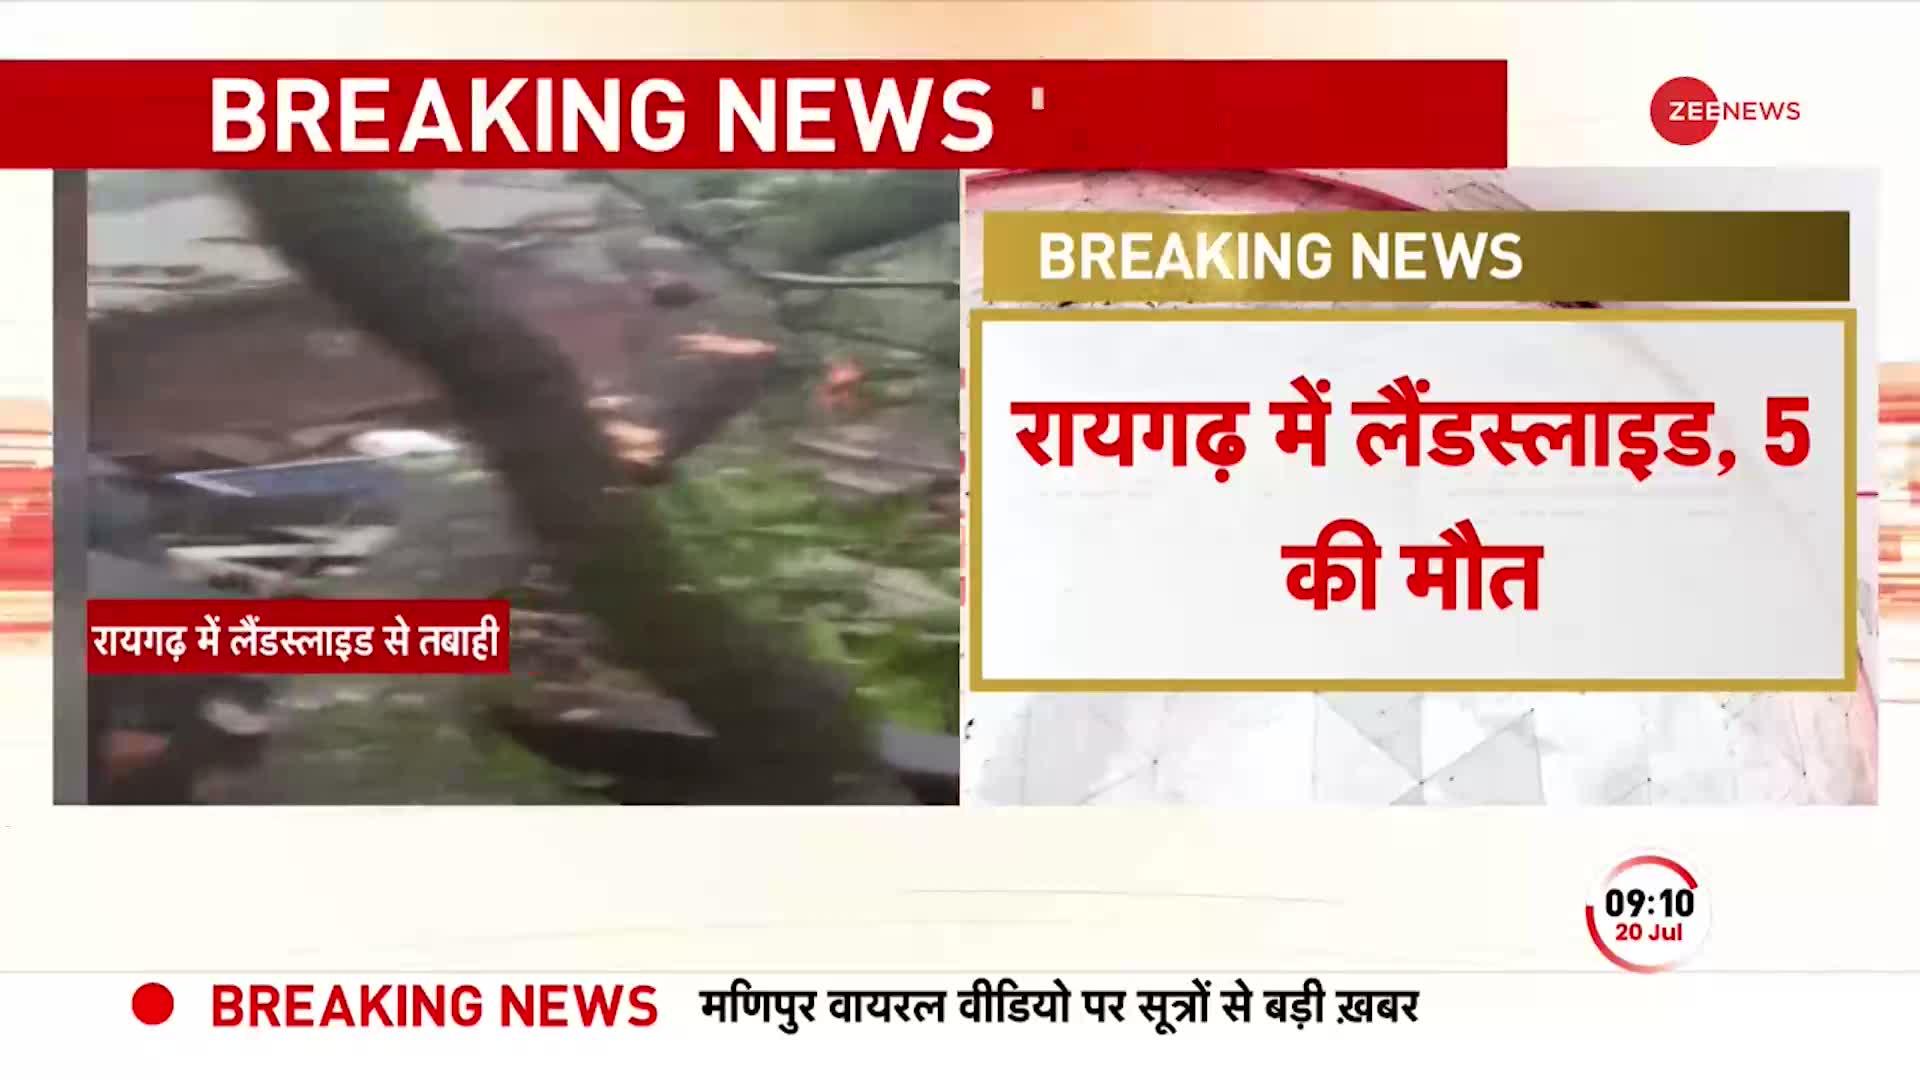 Maharashtra Landslide: Raigad जिले में भूस्खलन से 25 से ज़्यादा लोगों के घर तबाह, 5 की मौत